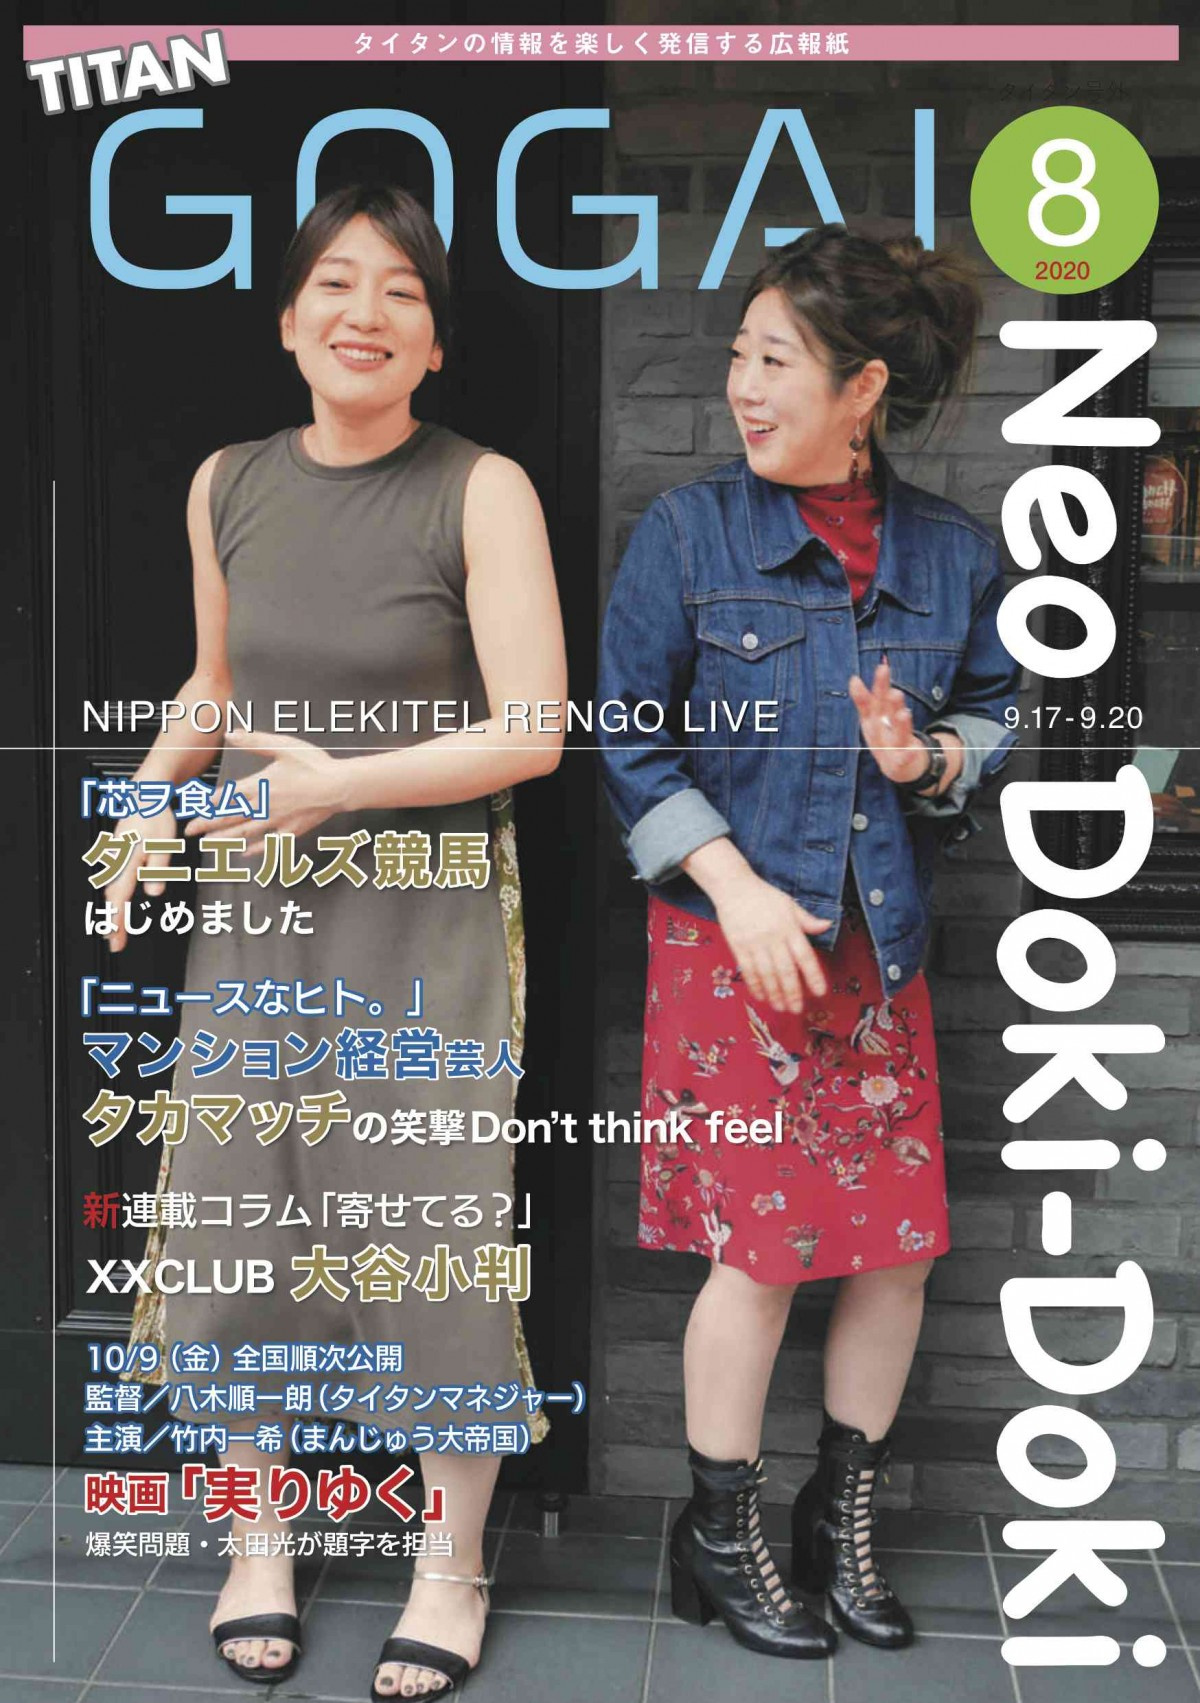 日本エレキテル連合 中野 相方のカワイイを全面プロデュース 号外 8月号表紙に Oricon News